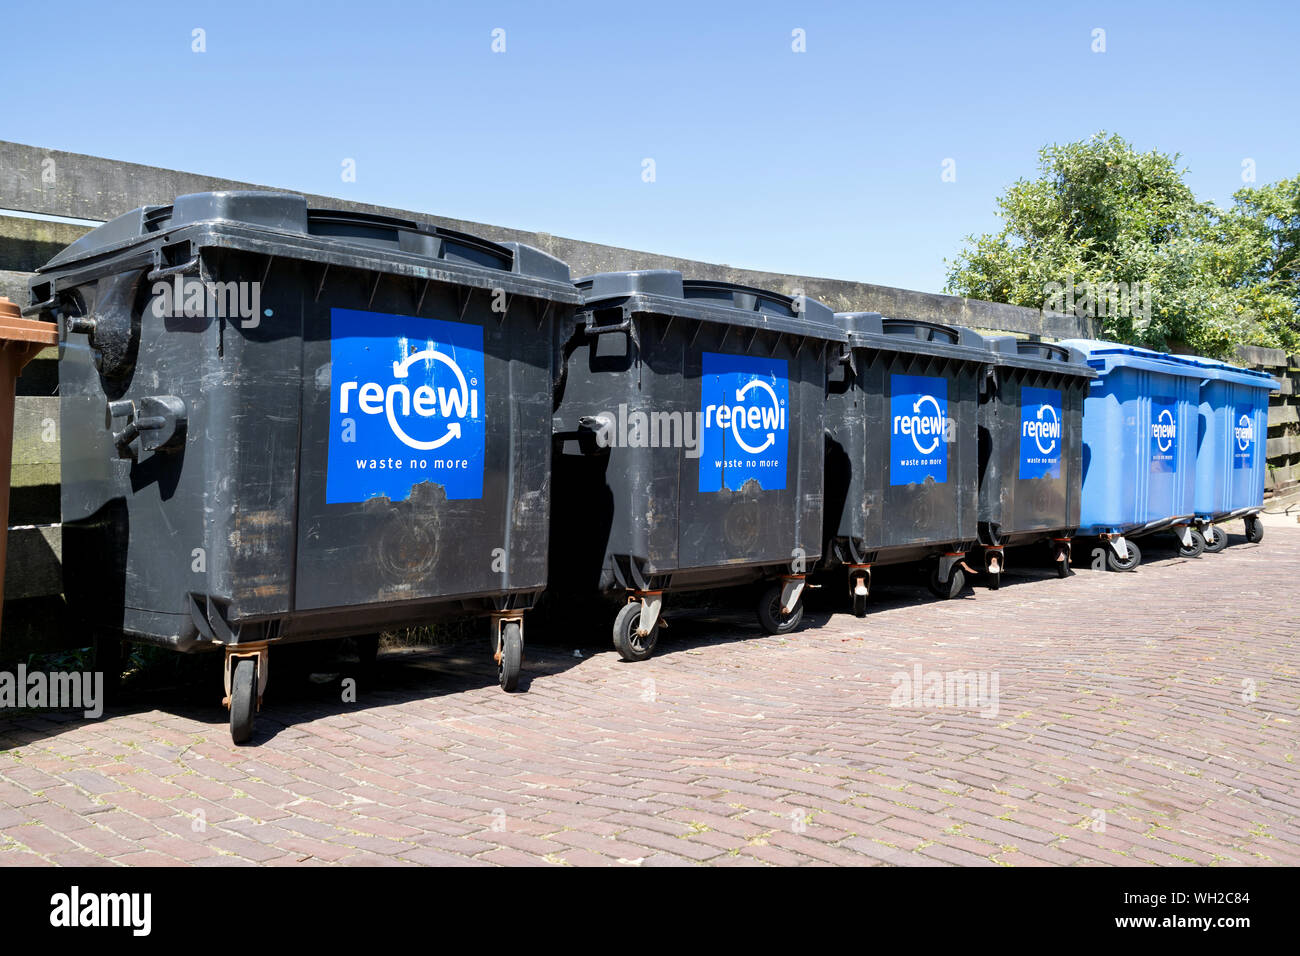 Renewi Abfallbehälter. Renewi plc ist eine der führenden europäischen Abfallwirtschaft Unternehmen in Europa und Nordamerika. Stockfoto